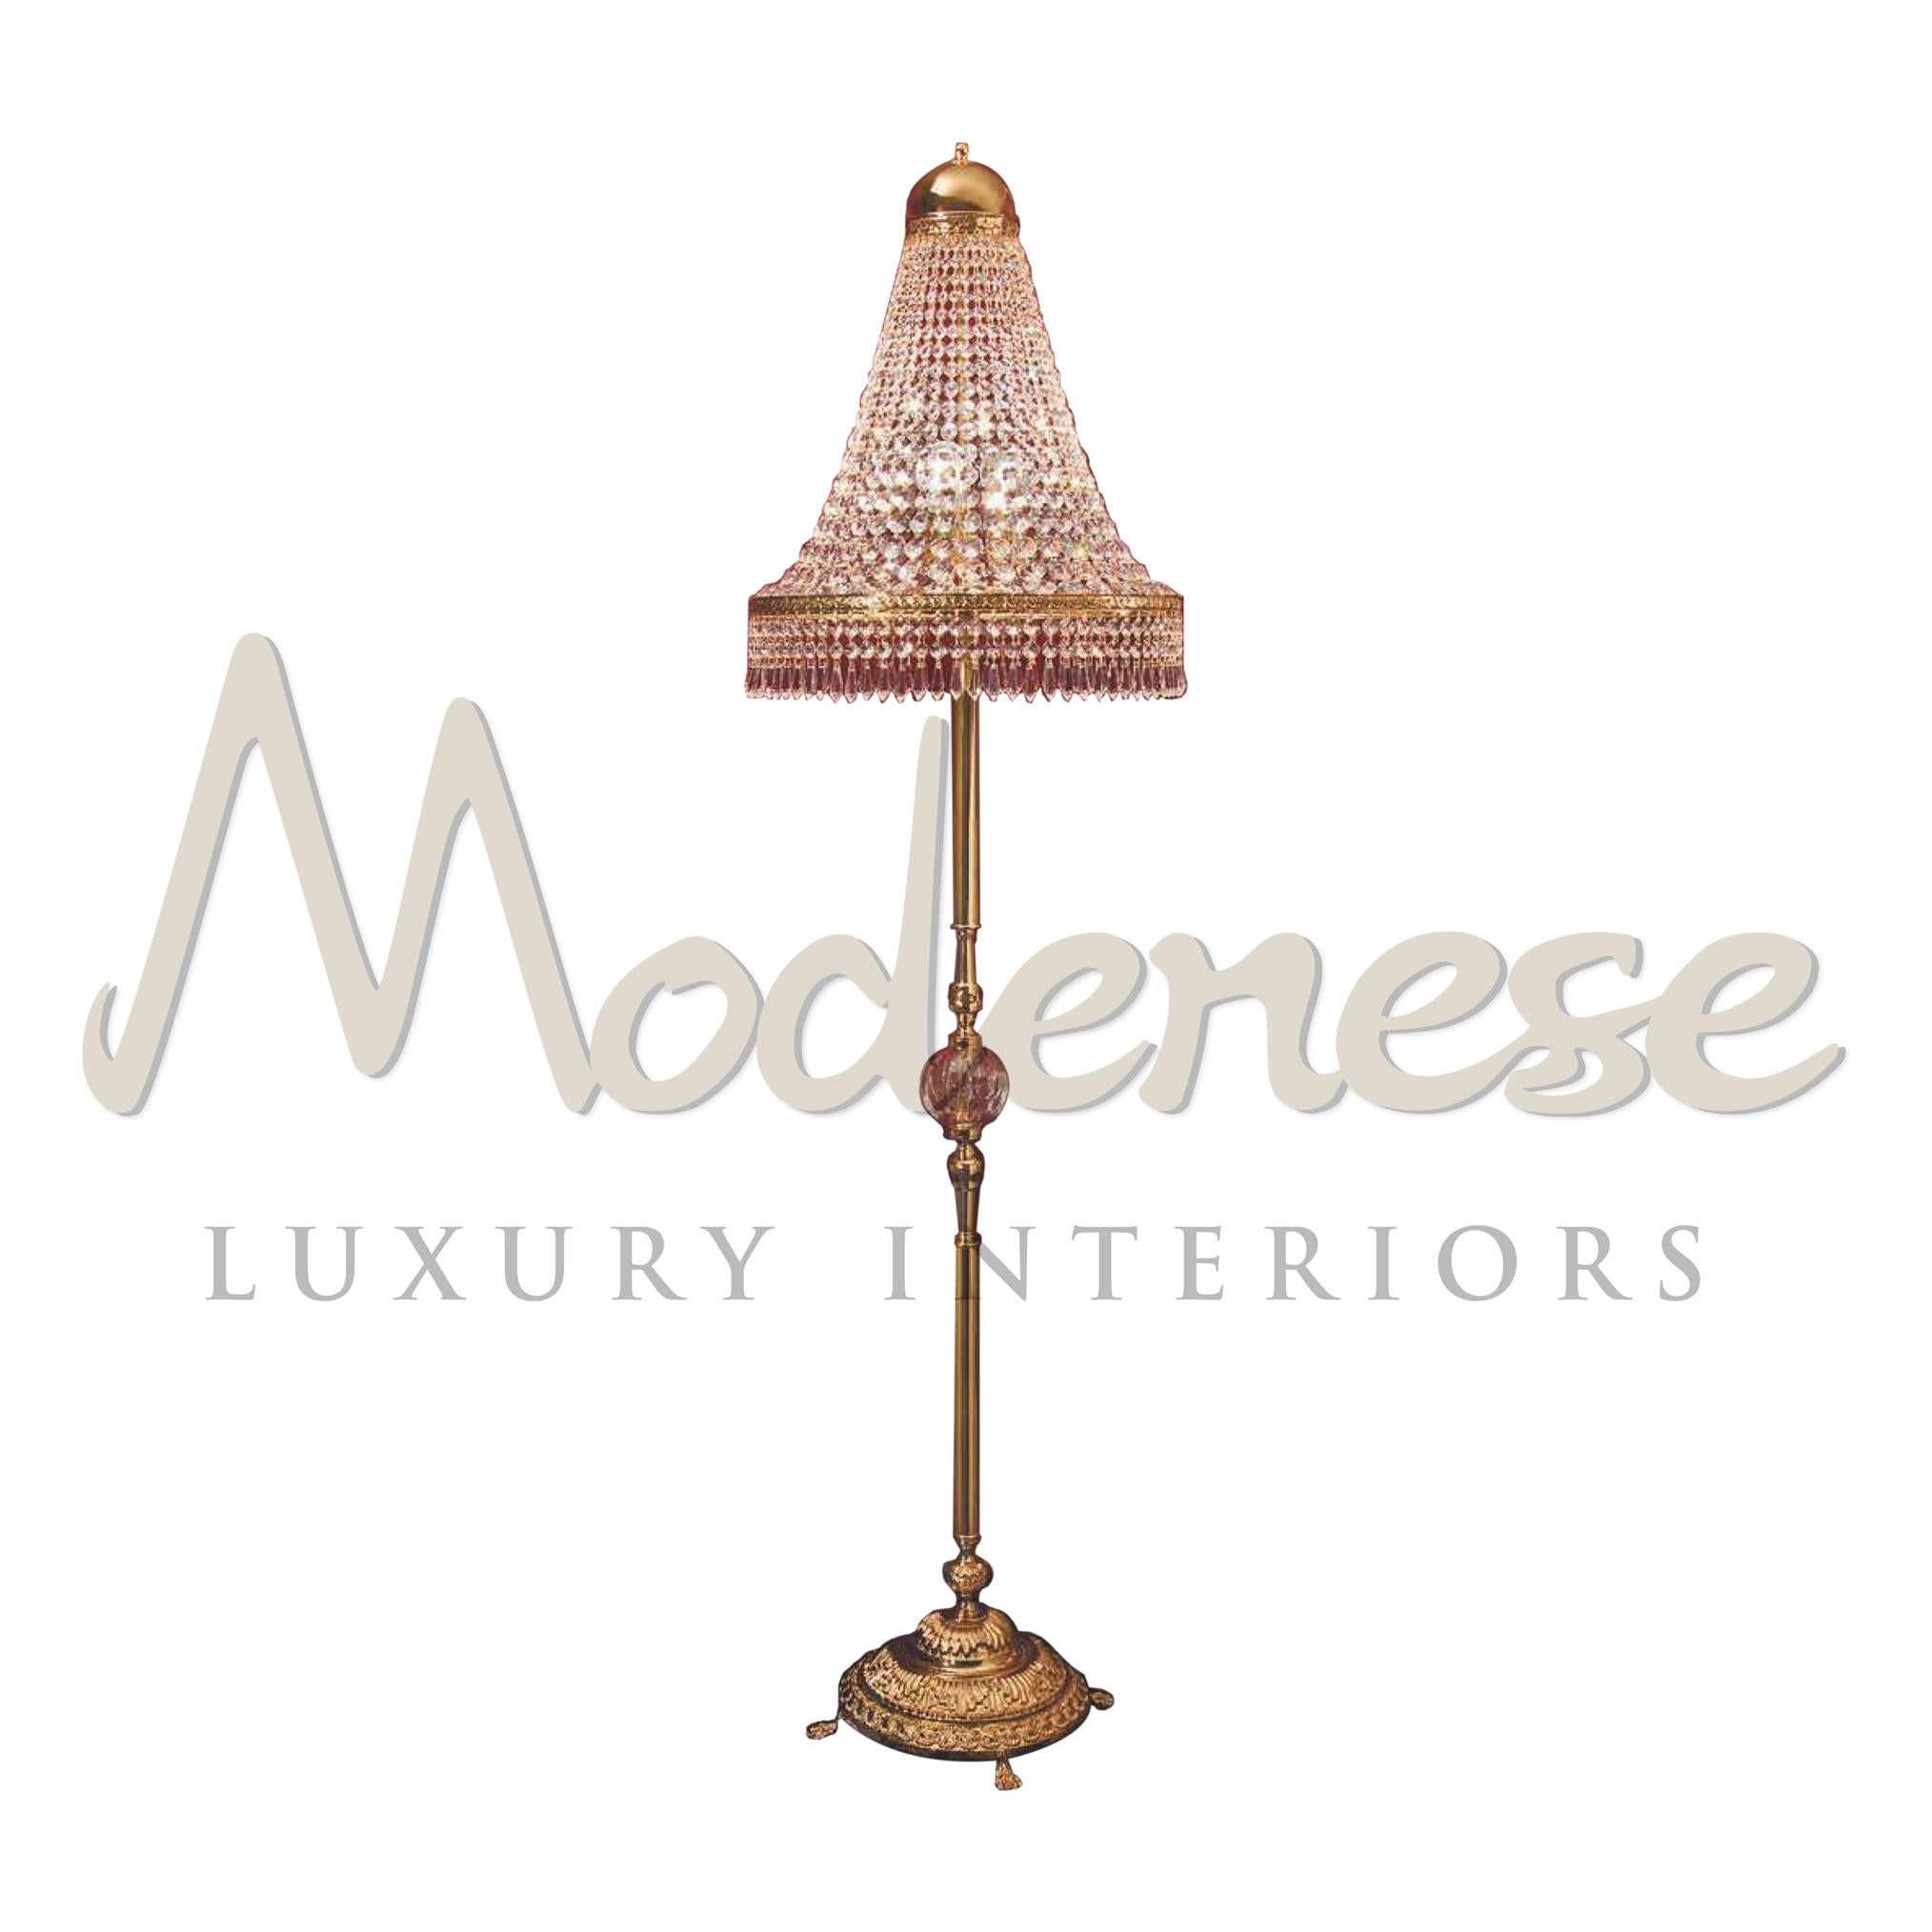 Ce lampadaire sur pied à 3 lumières de Modenese Luxury Interiors allie élégance et richesse. La base en laiton fabriquée à la main est finie en plaqué or 24kt et couronnée de cristaux de scholer qui ajoutent un bel accent. Ce modèle nécessite 3